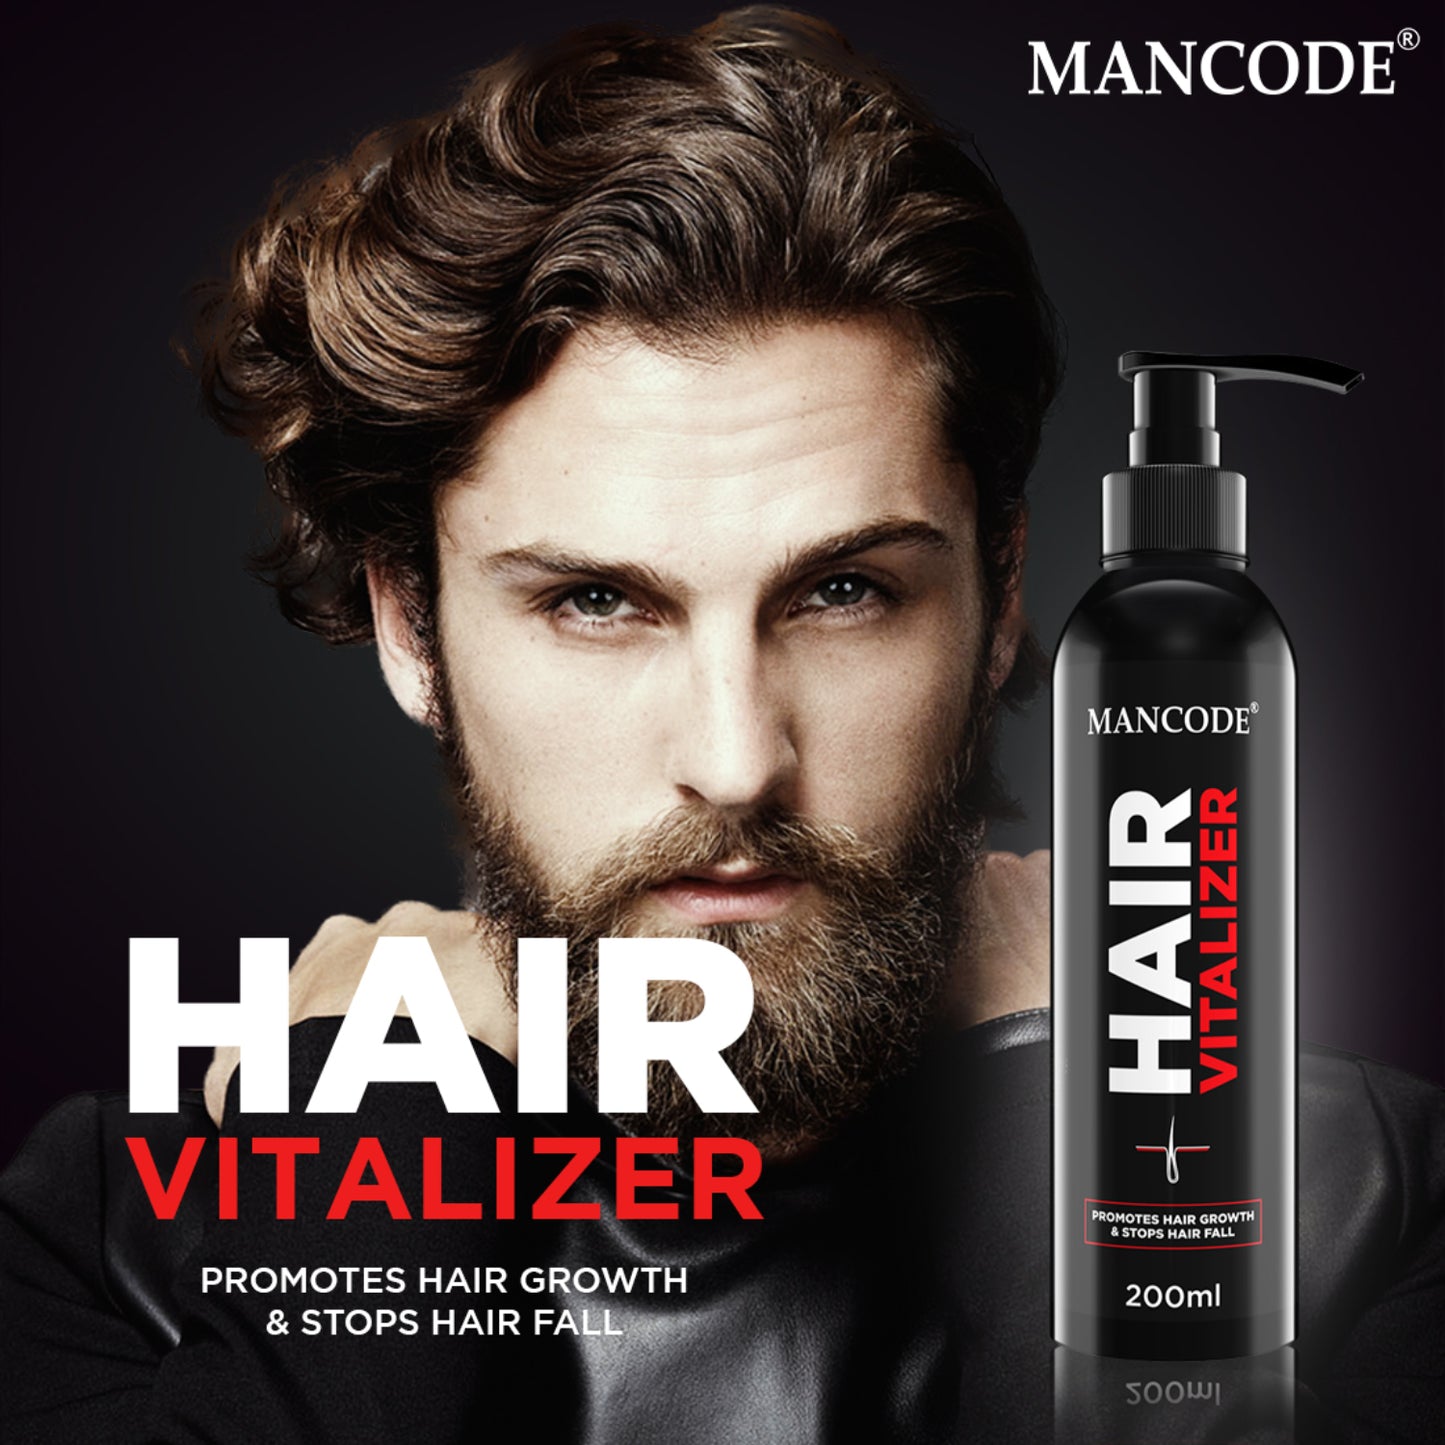 Hair Vitalizer for Men